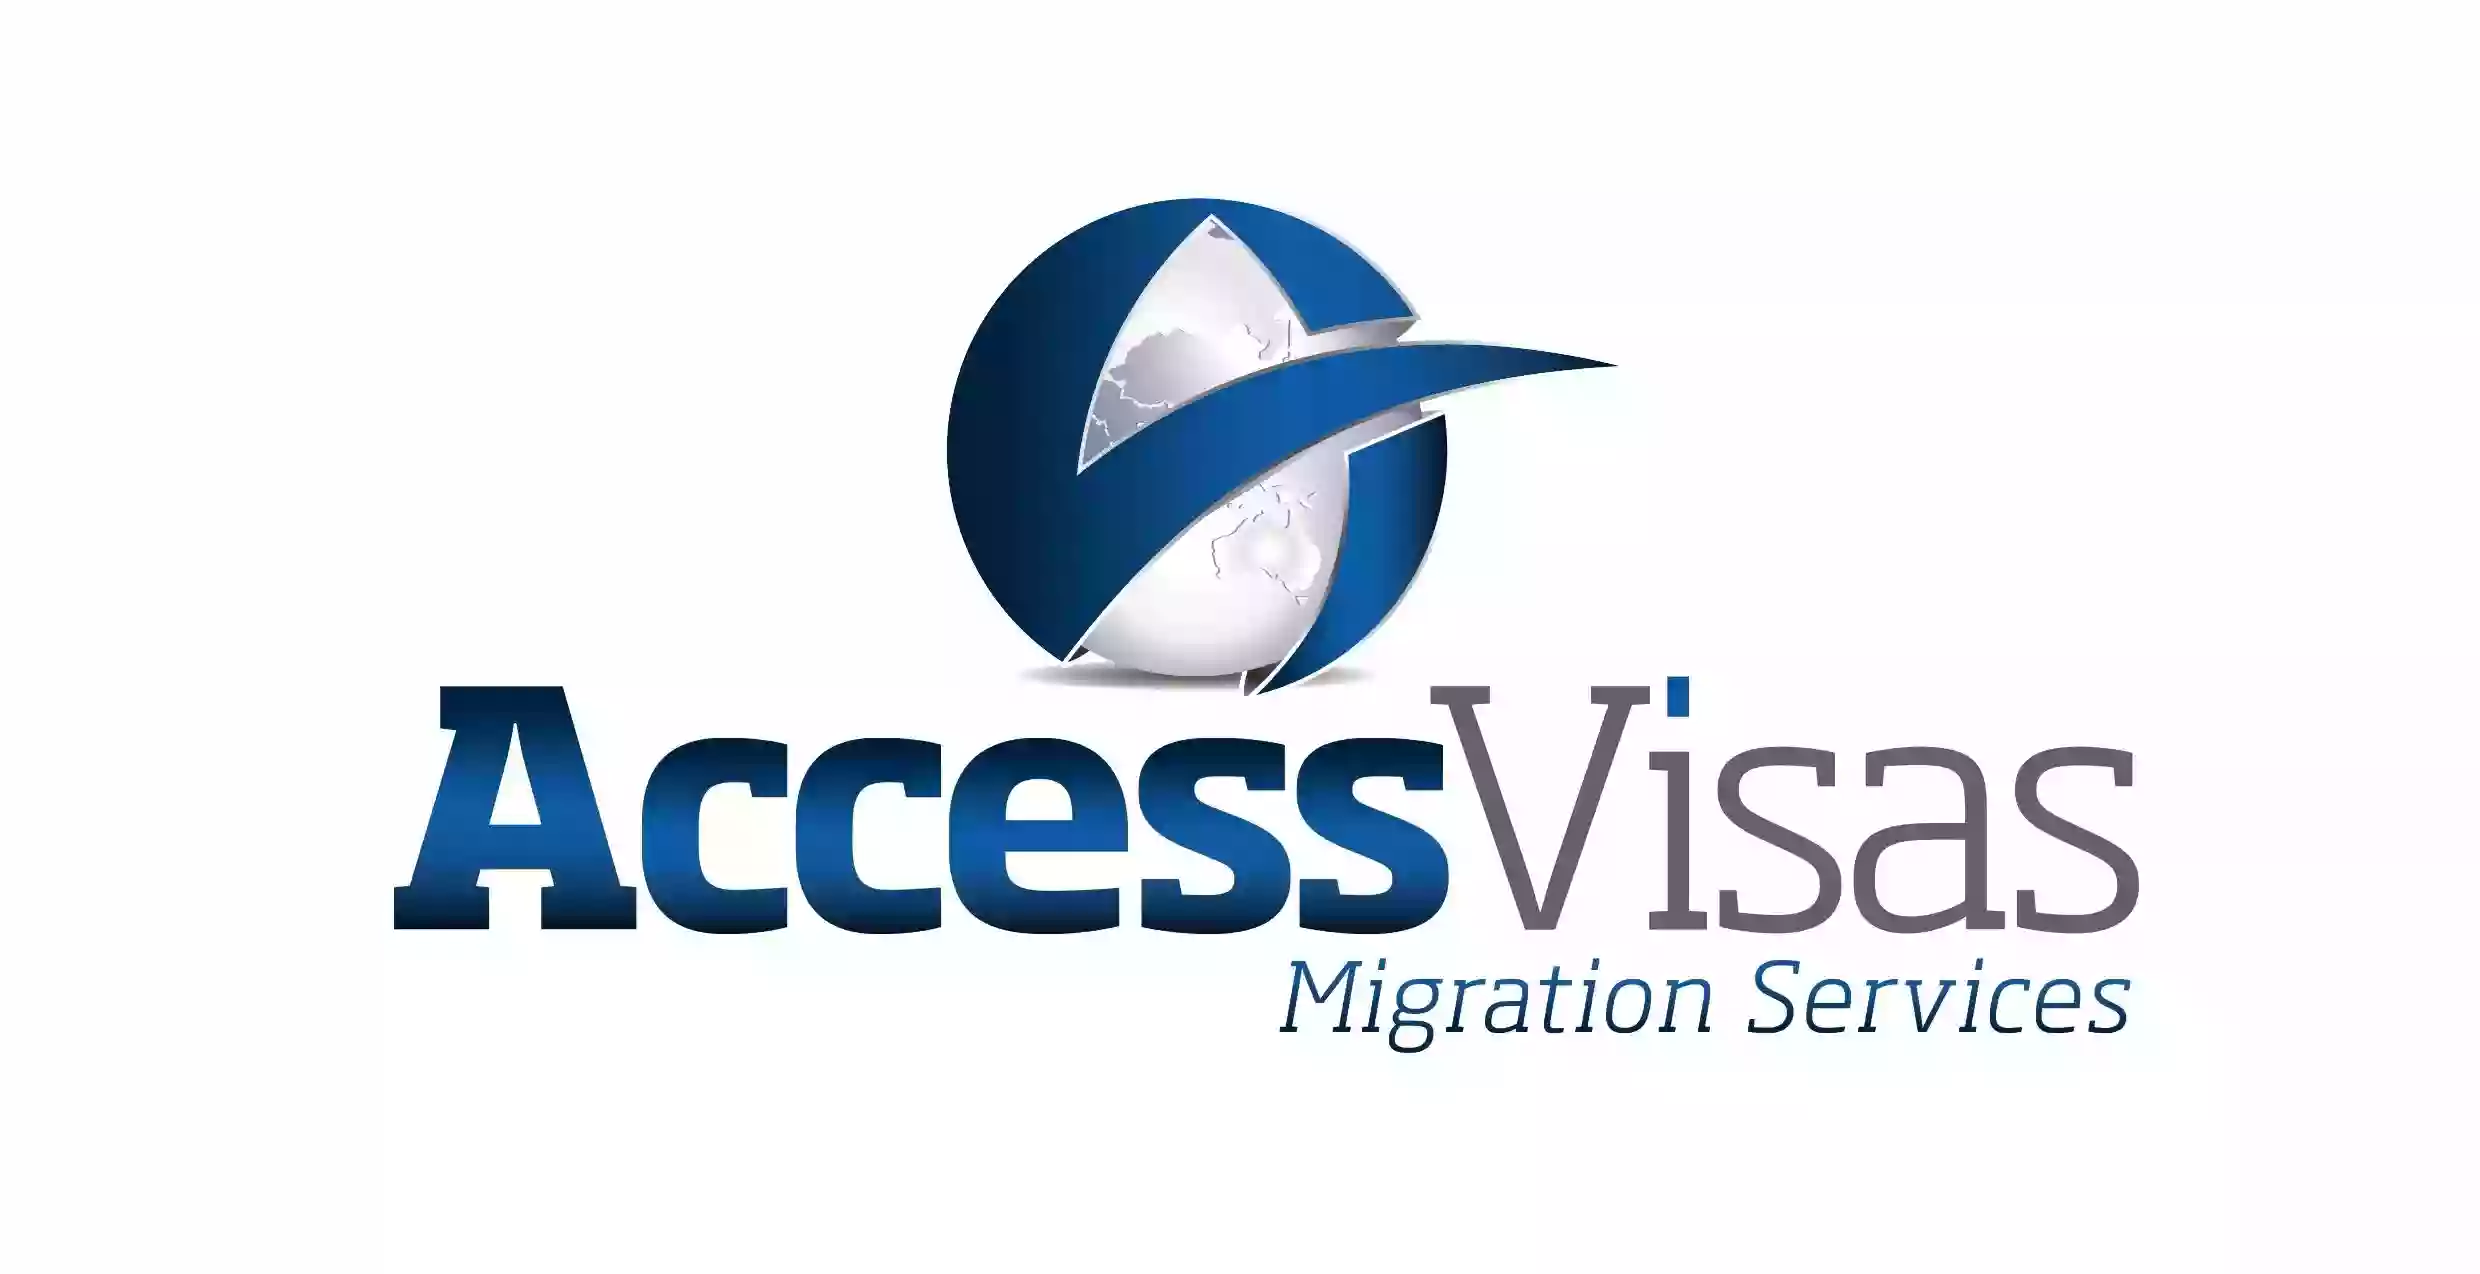 ACCESS VISAS MIGRATION SERVICES